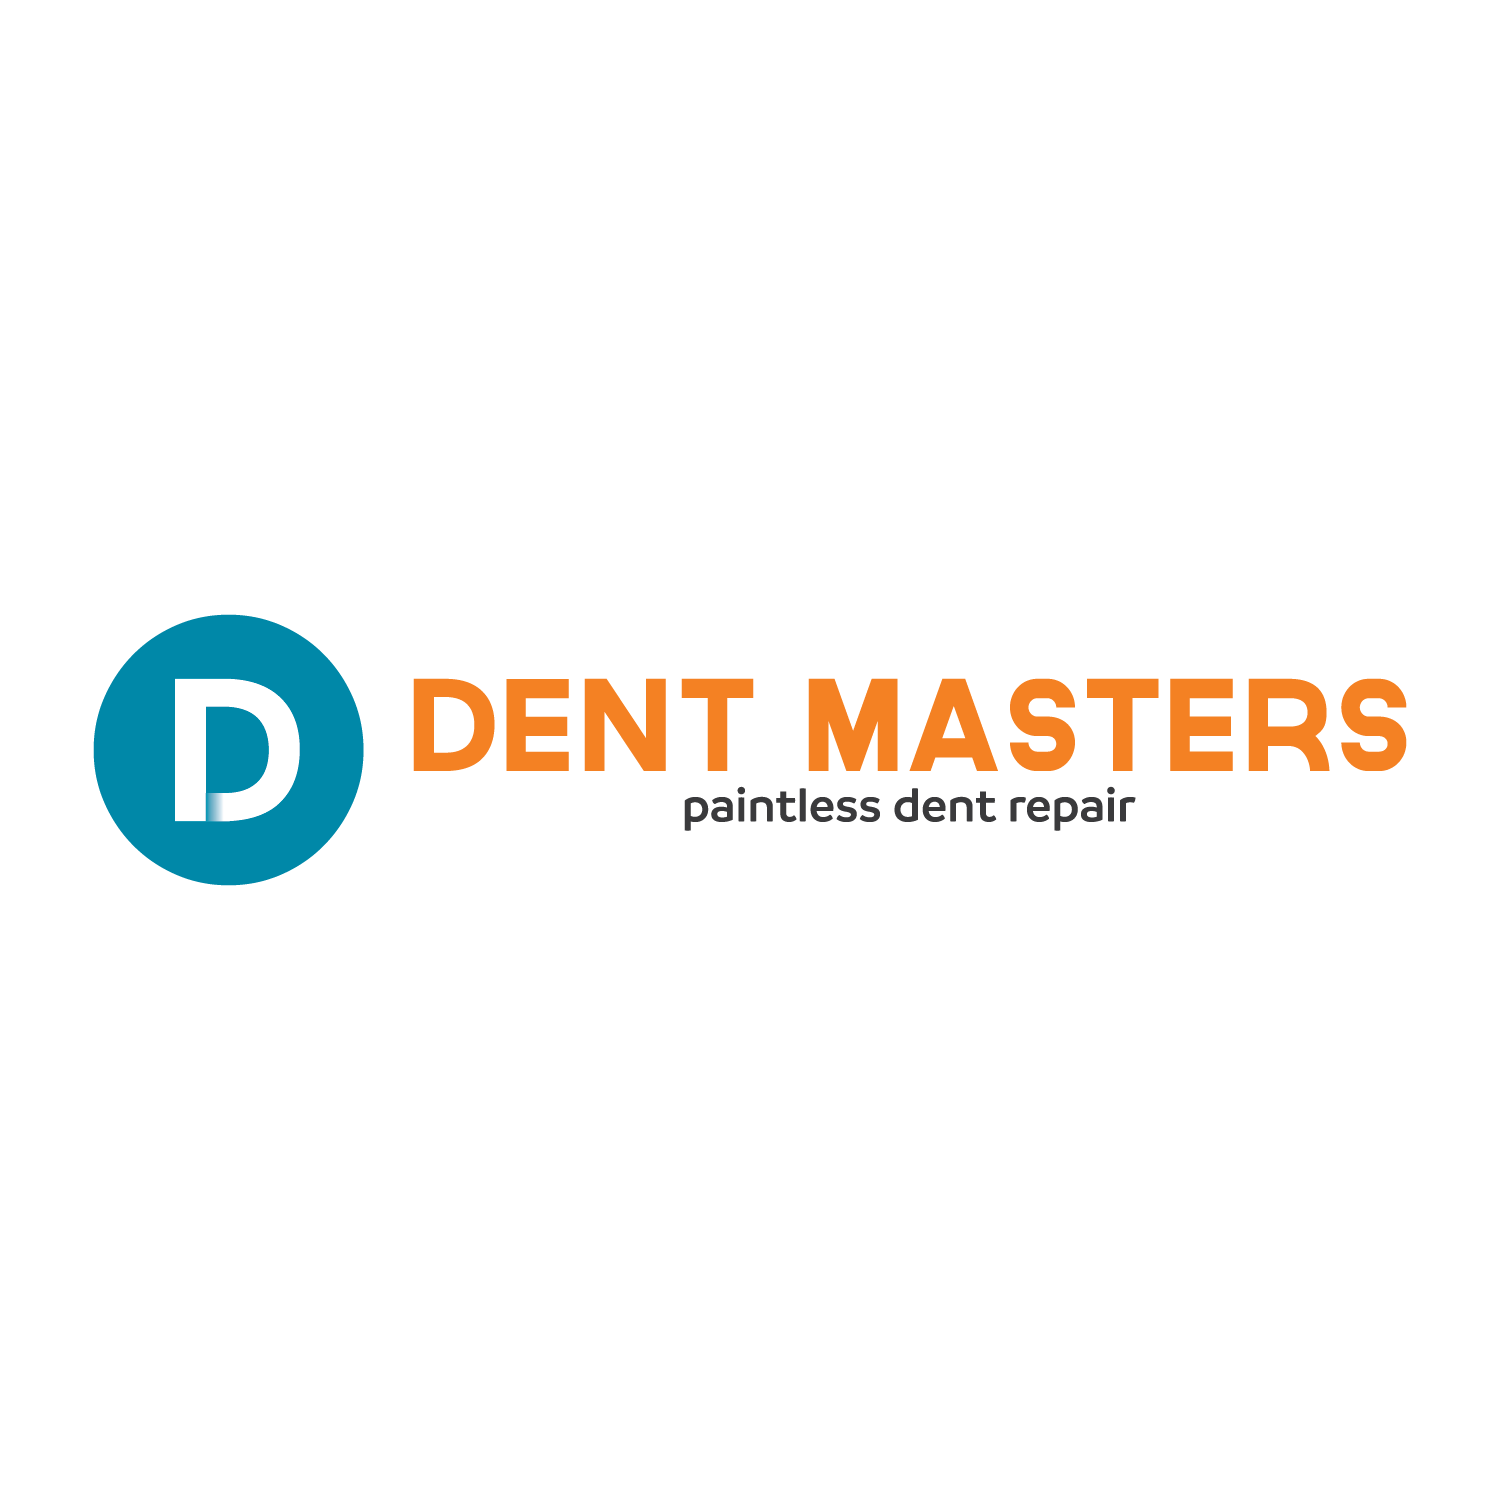 Dent Masters Paintless Dent Repair Logo